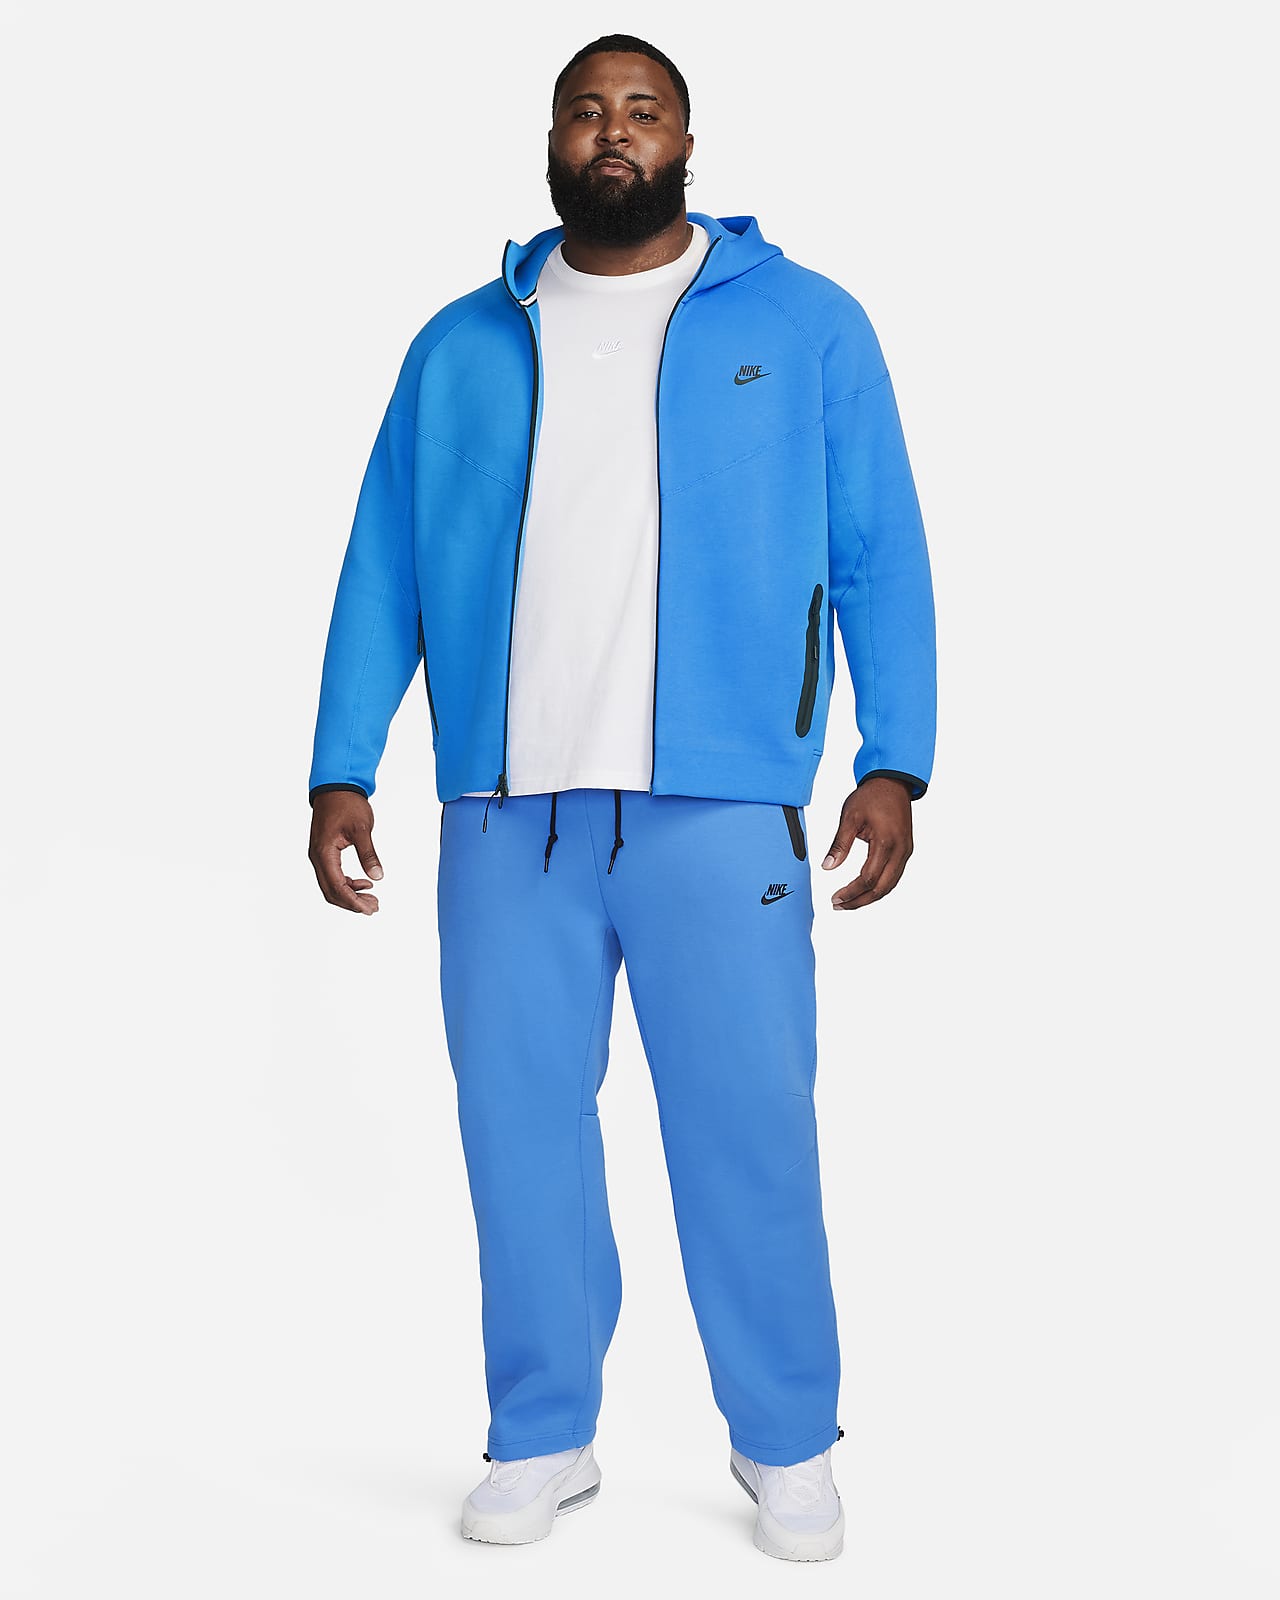 Nike Open-hem Sweatpants for Men